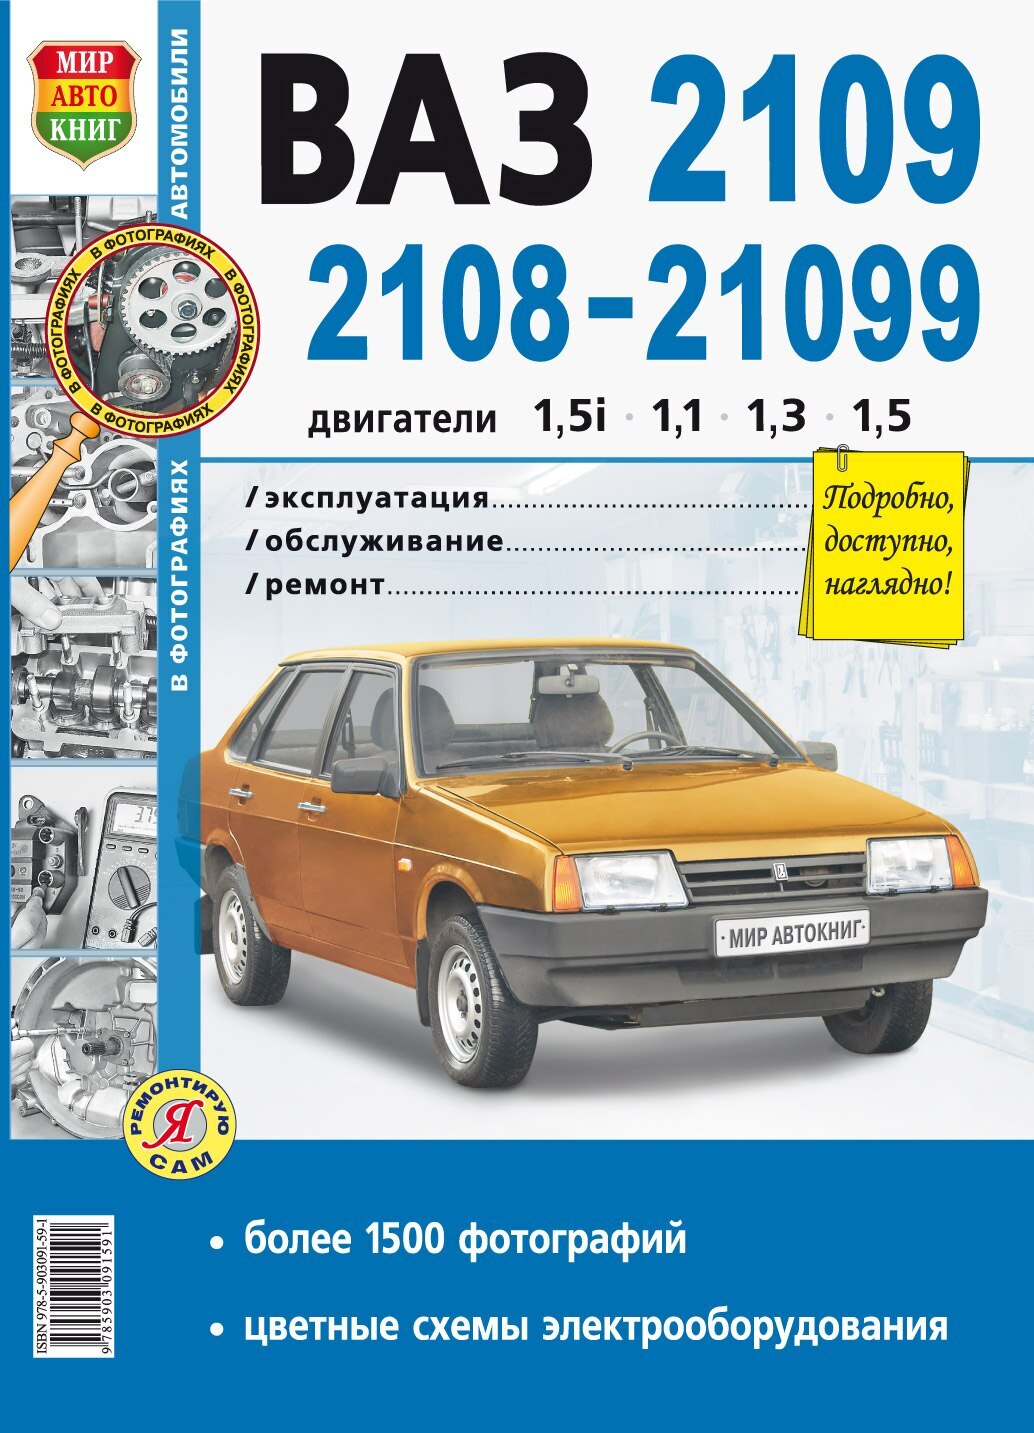 ВАЗ 21099 - список дополнений к автомобильным отзывам с меткой 